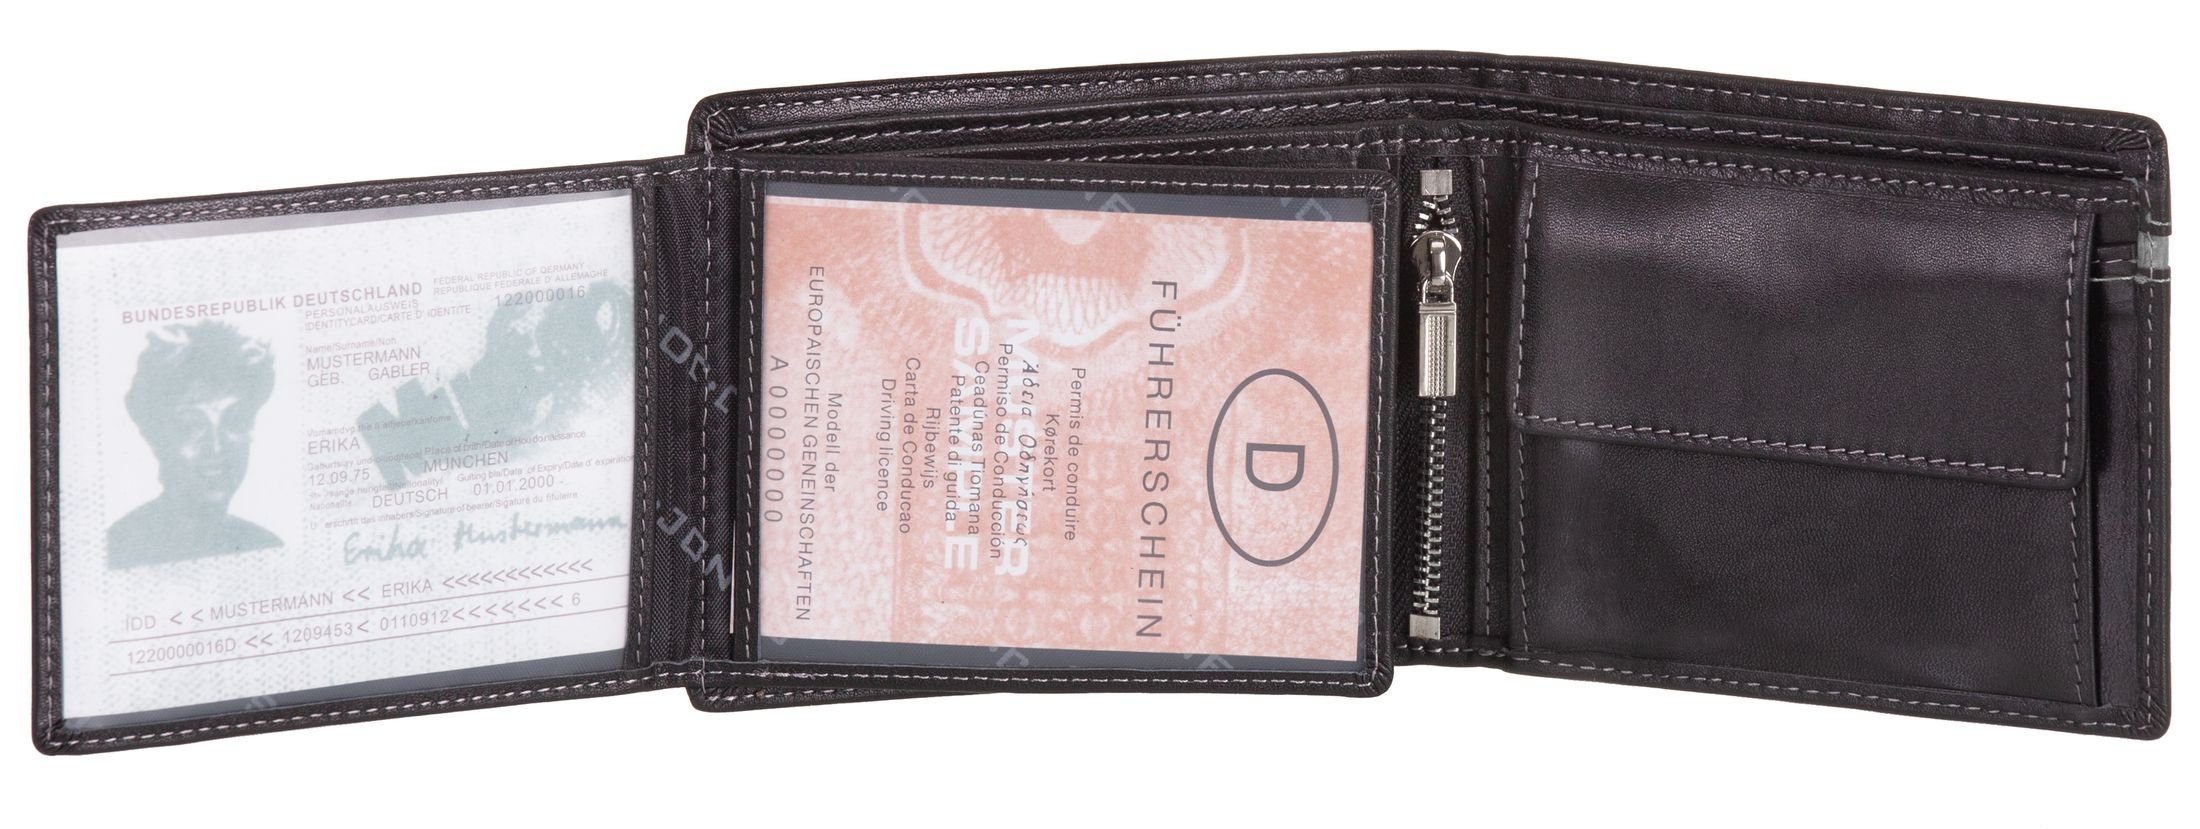 J.Jones Geldbörse, Geldbörse RFID-Schutz Münzfach schwarz-grau Geldbeutel Echt Leder mit Portemonnaie faltbar